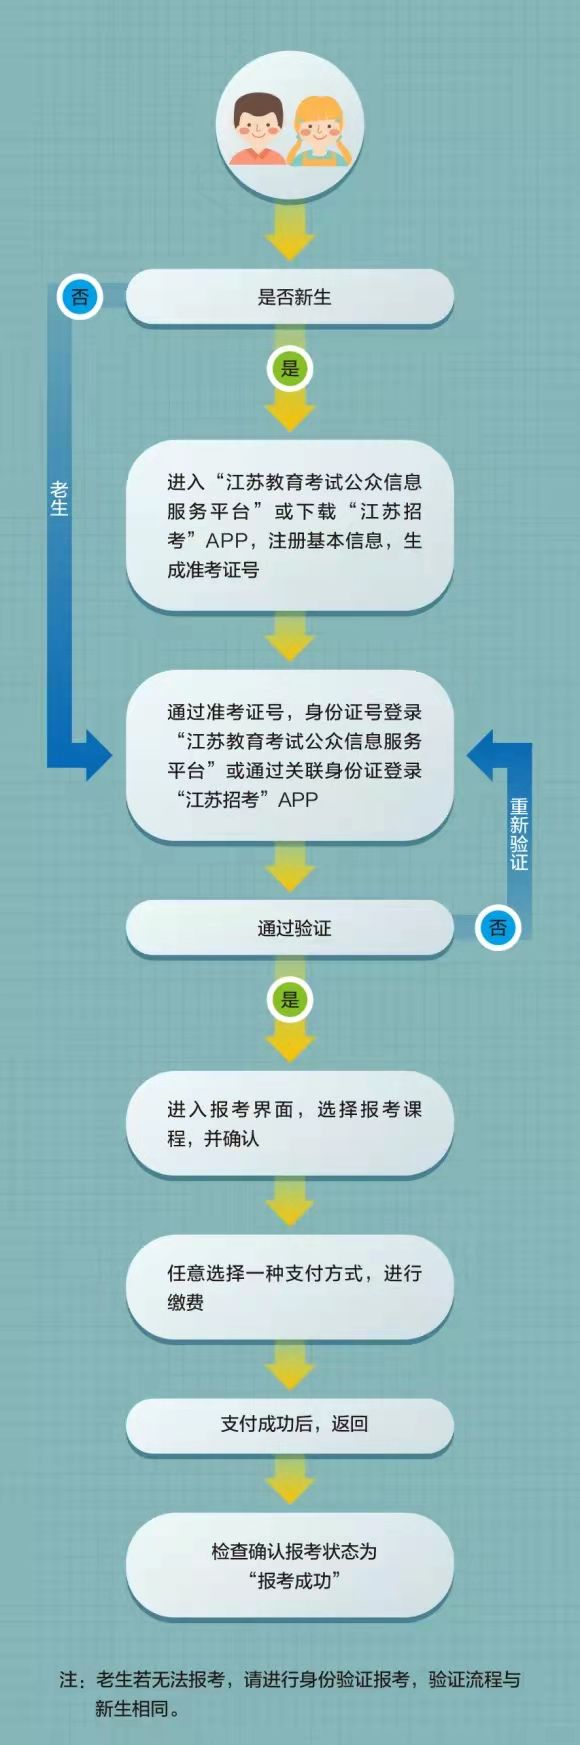 江苏省2022年4月自学考试网上报名流程图